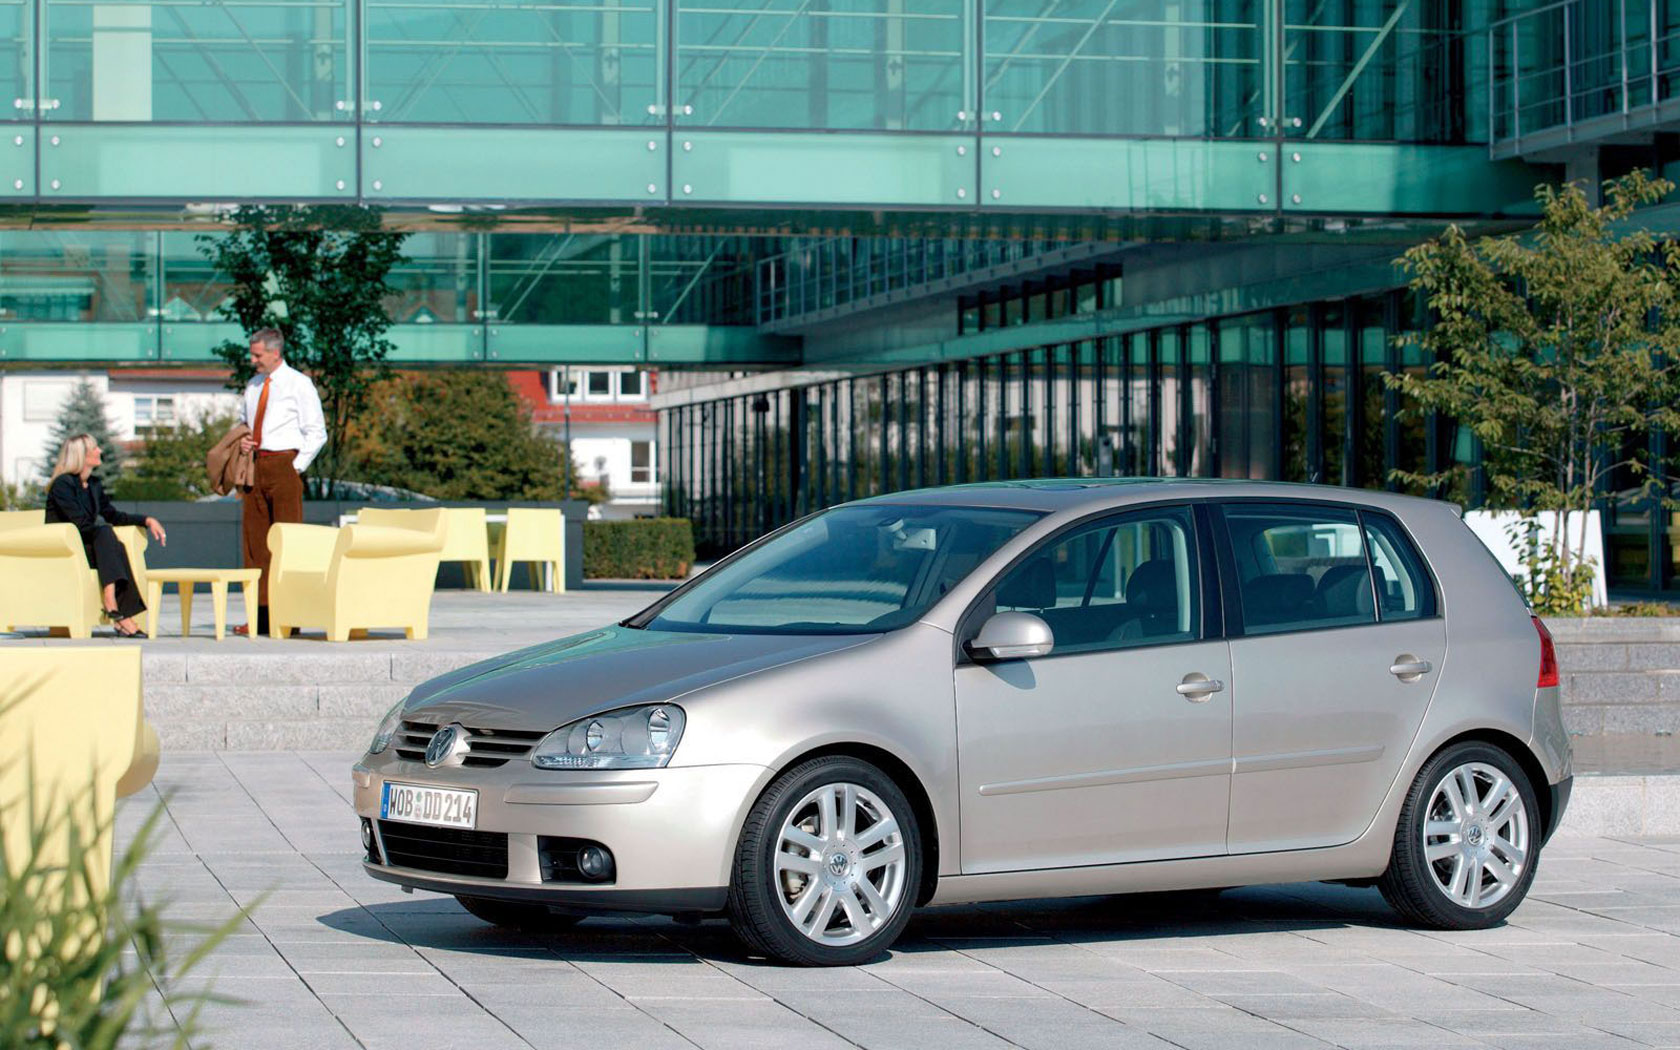  Volkswagen Golf (2004-2008)